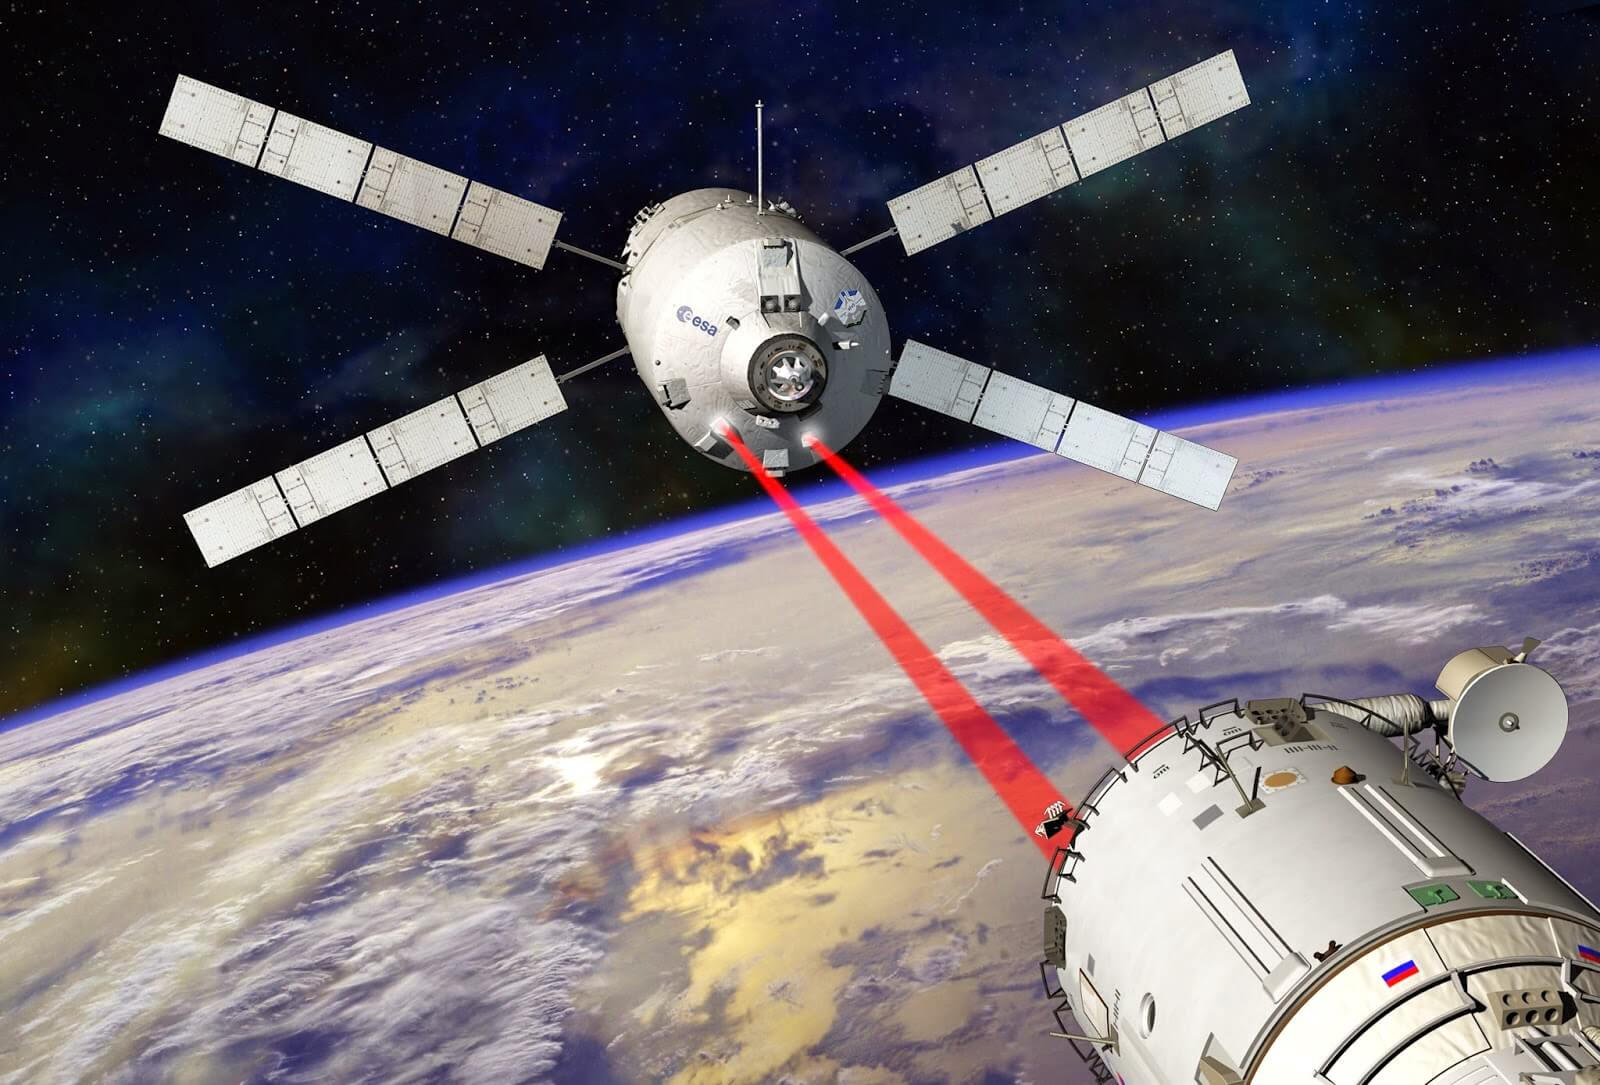 הדמיית אמן של החללית ATV-5 מתקרבת לעגינה אוטומטית בתחנת החלל. איור: סוכנות החלל האירופית ESA